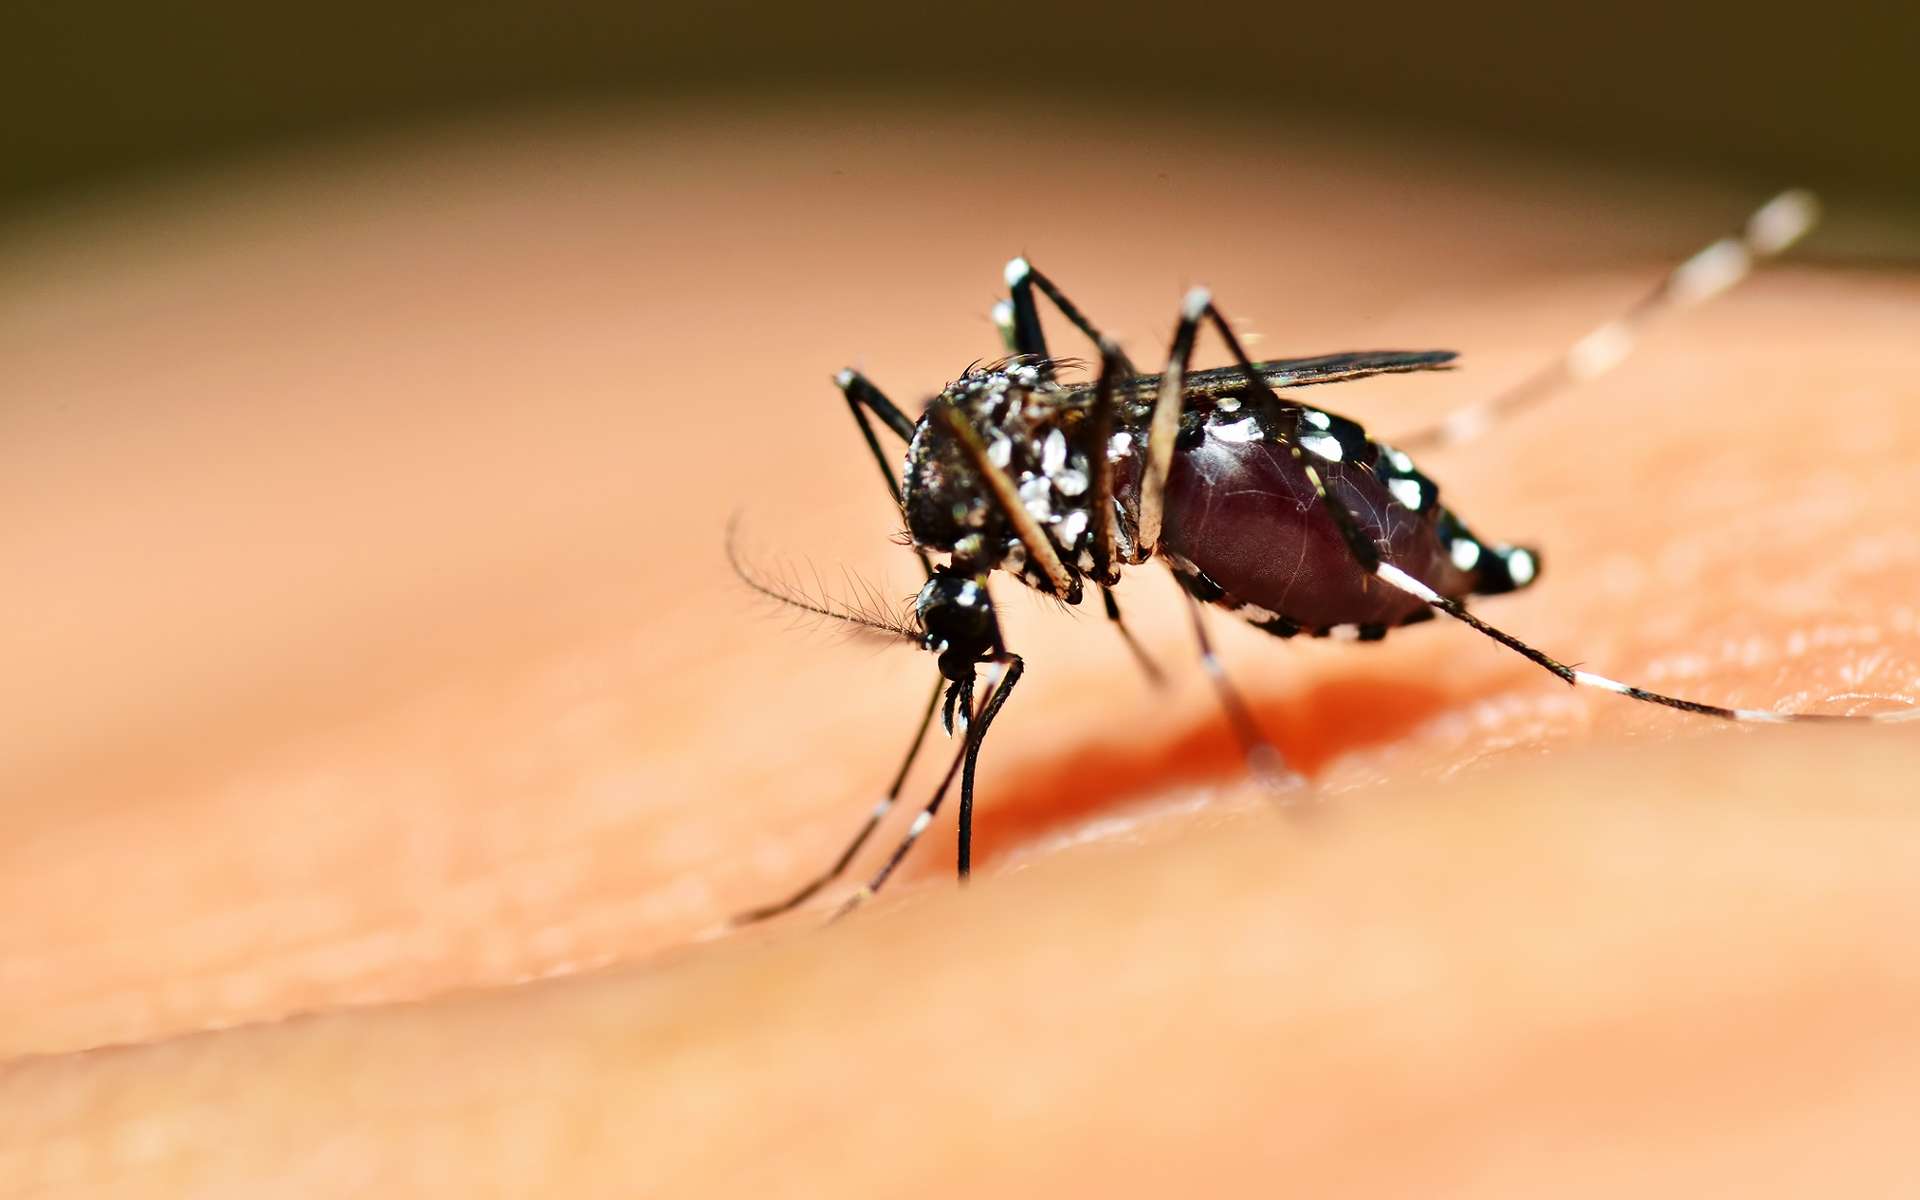 Les moustiques du genre Aedes transmettent des flavivirus. © mrfiza, Shutterstock